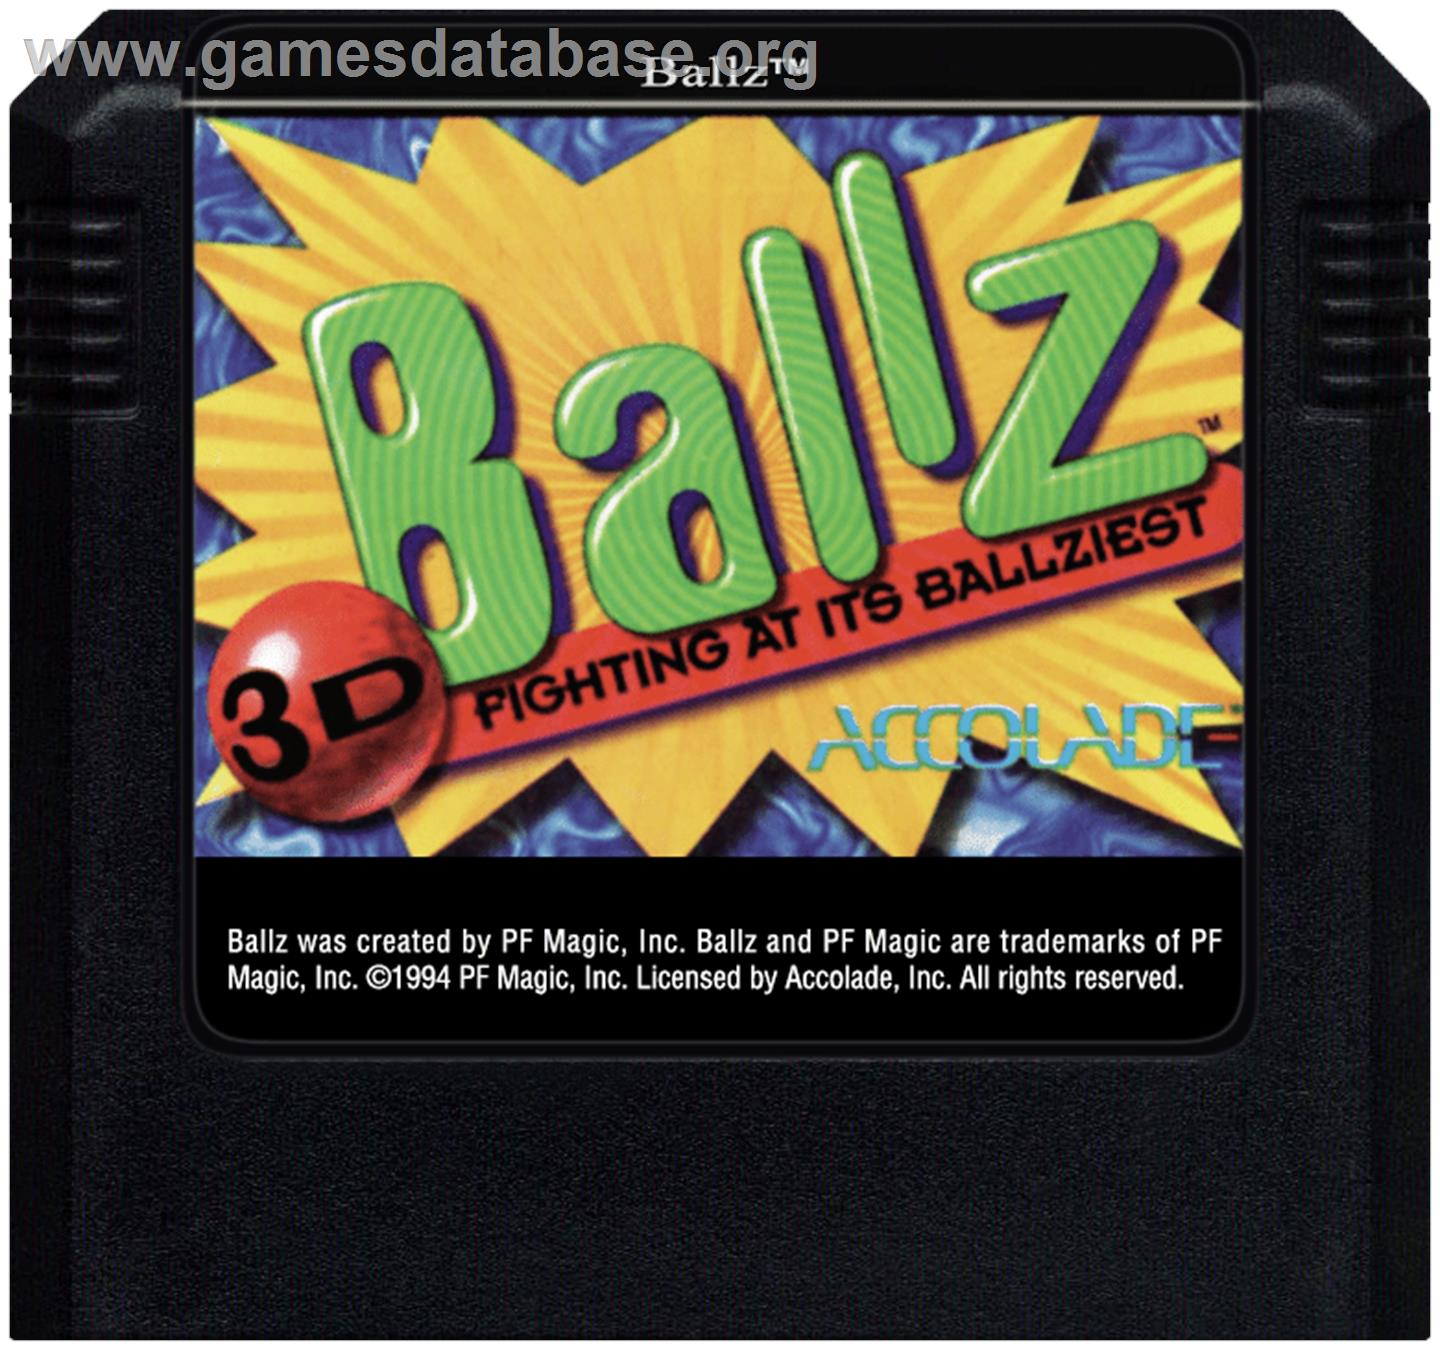 Ballz 3D - Sega Genesis - Artwork - Cartridge